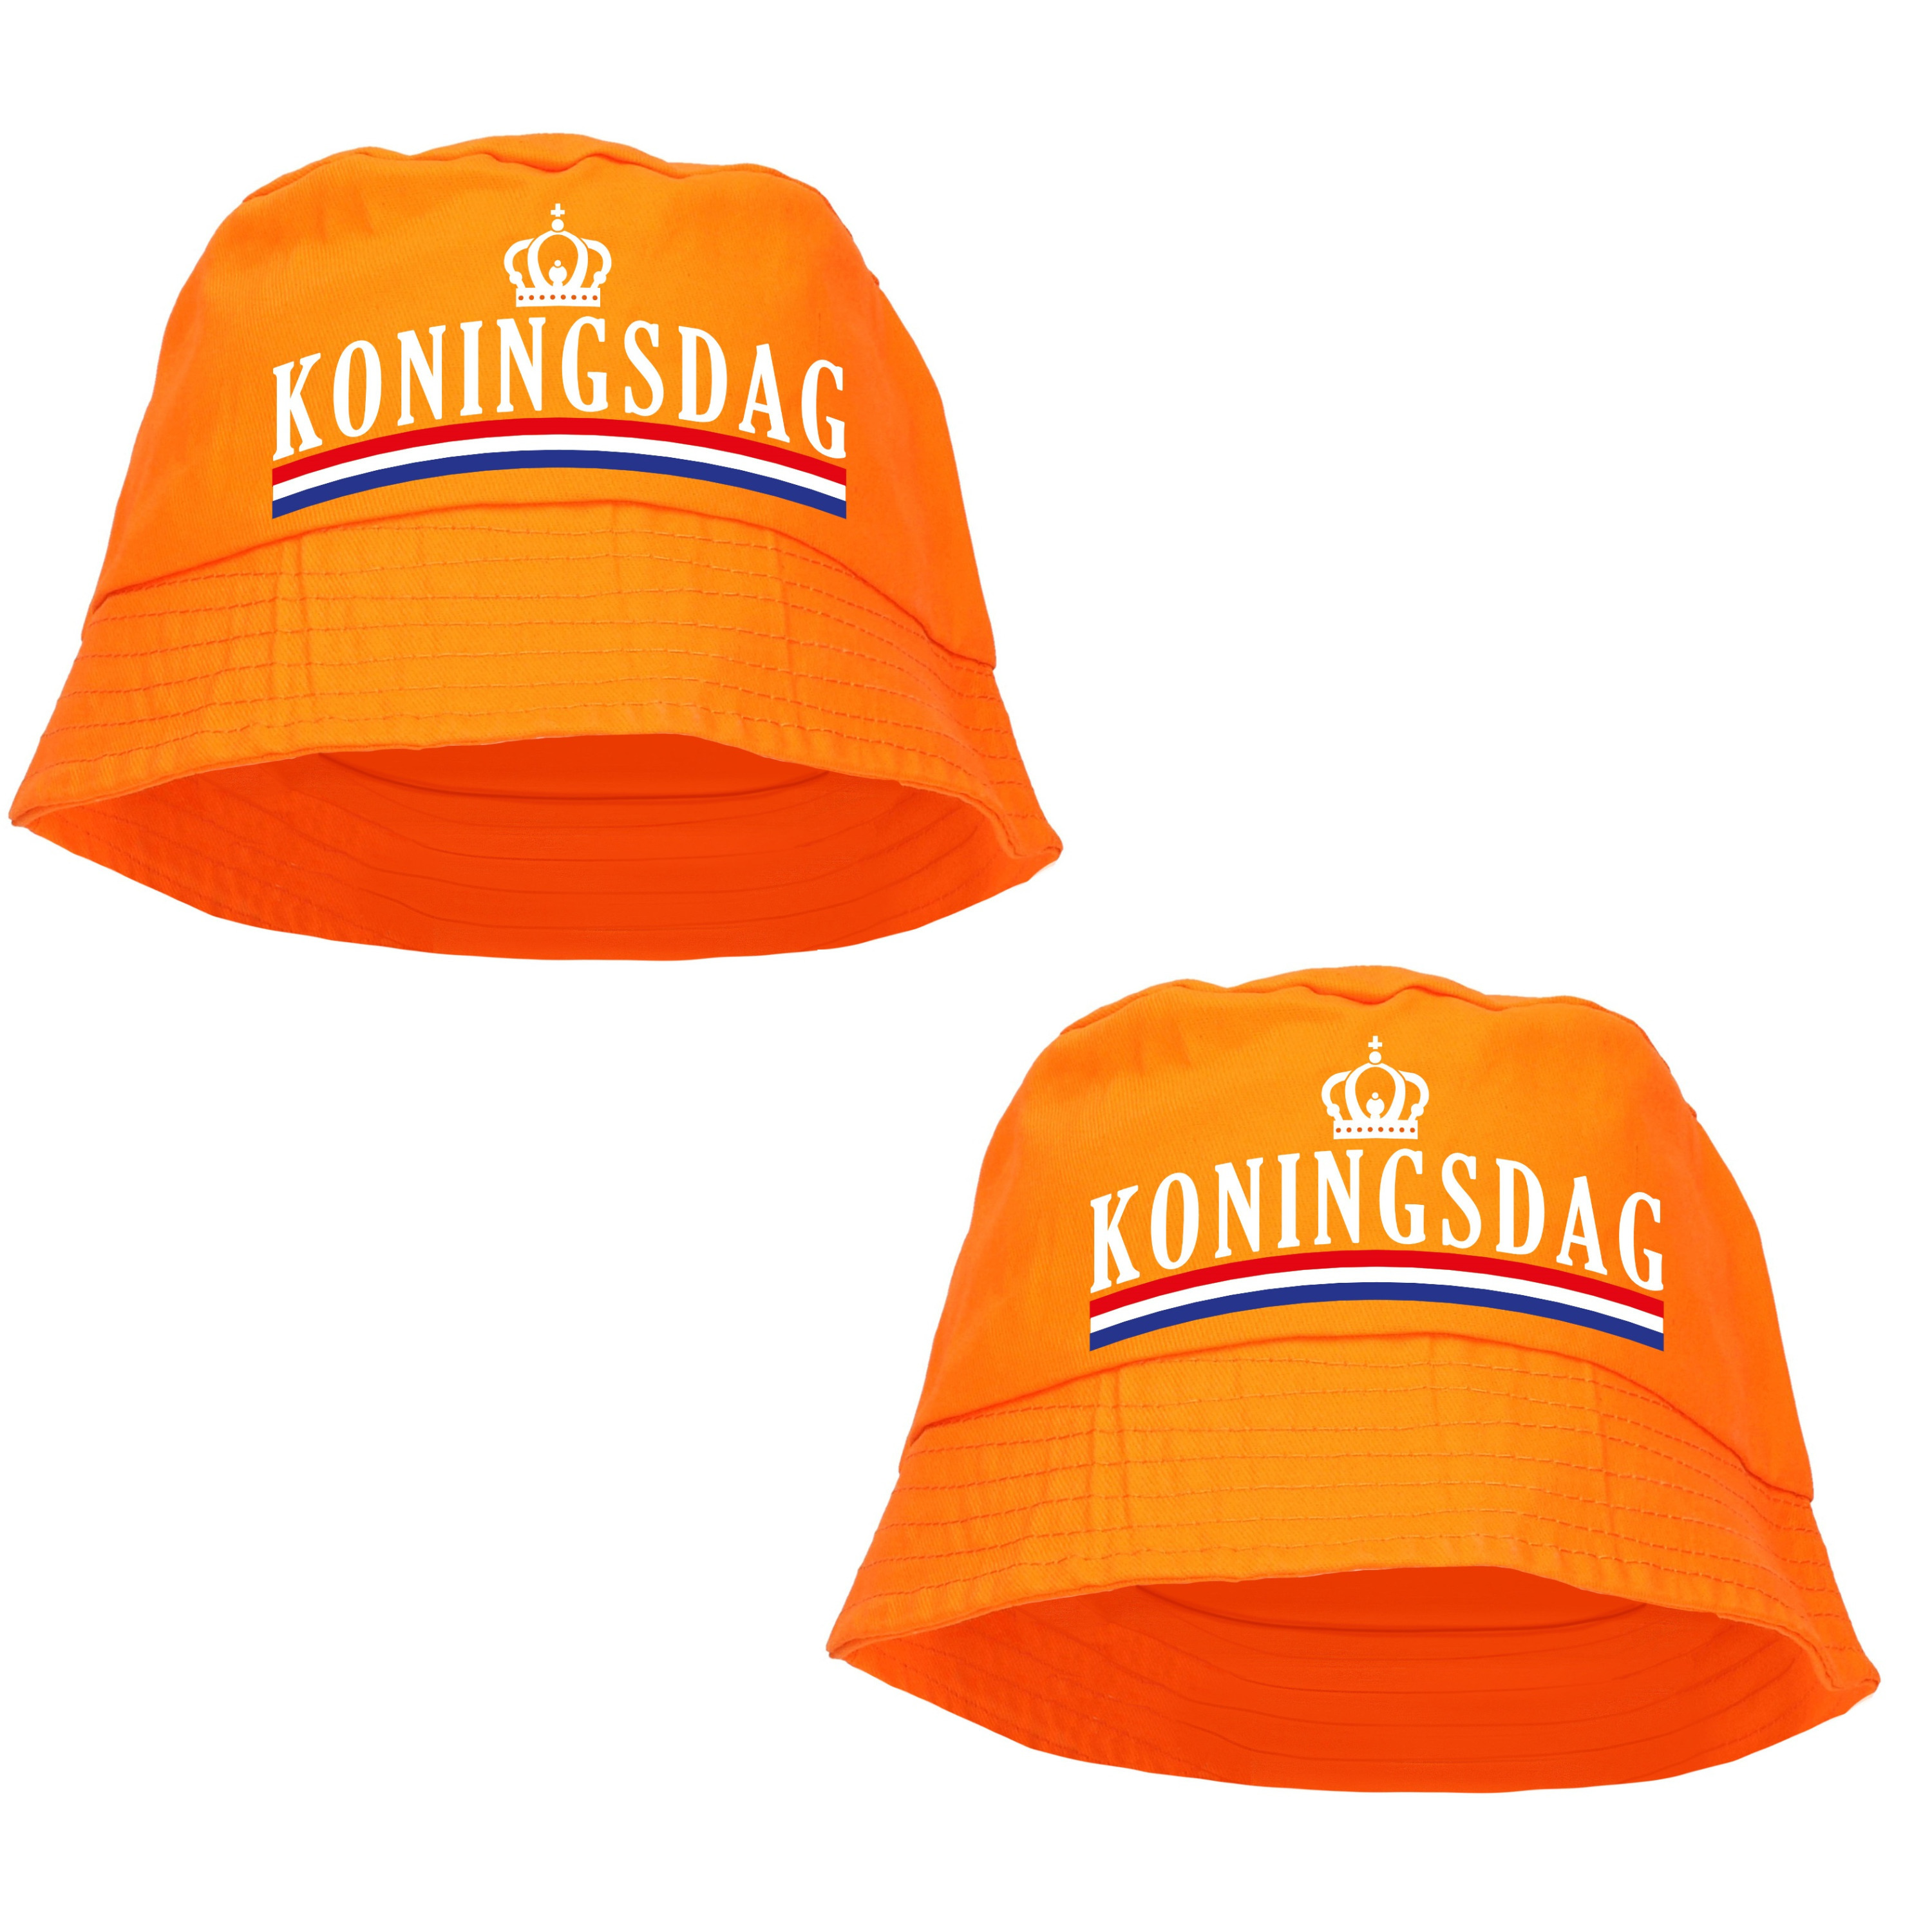 4x stuks Koningsdag bucket hat-zonnehoedje oranje voor dames en heren